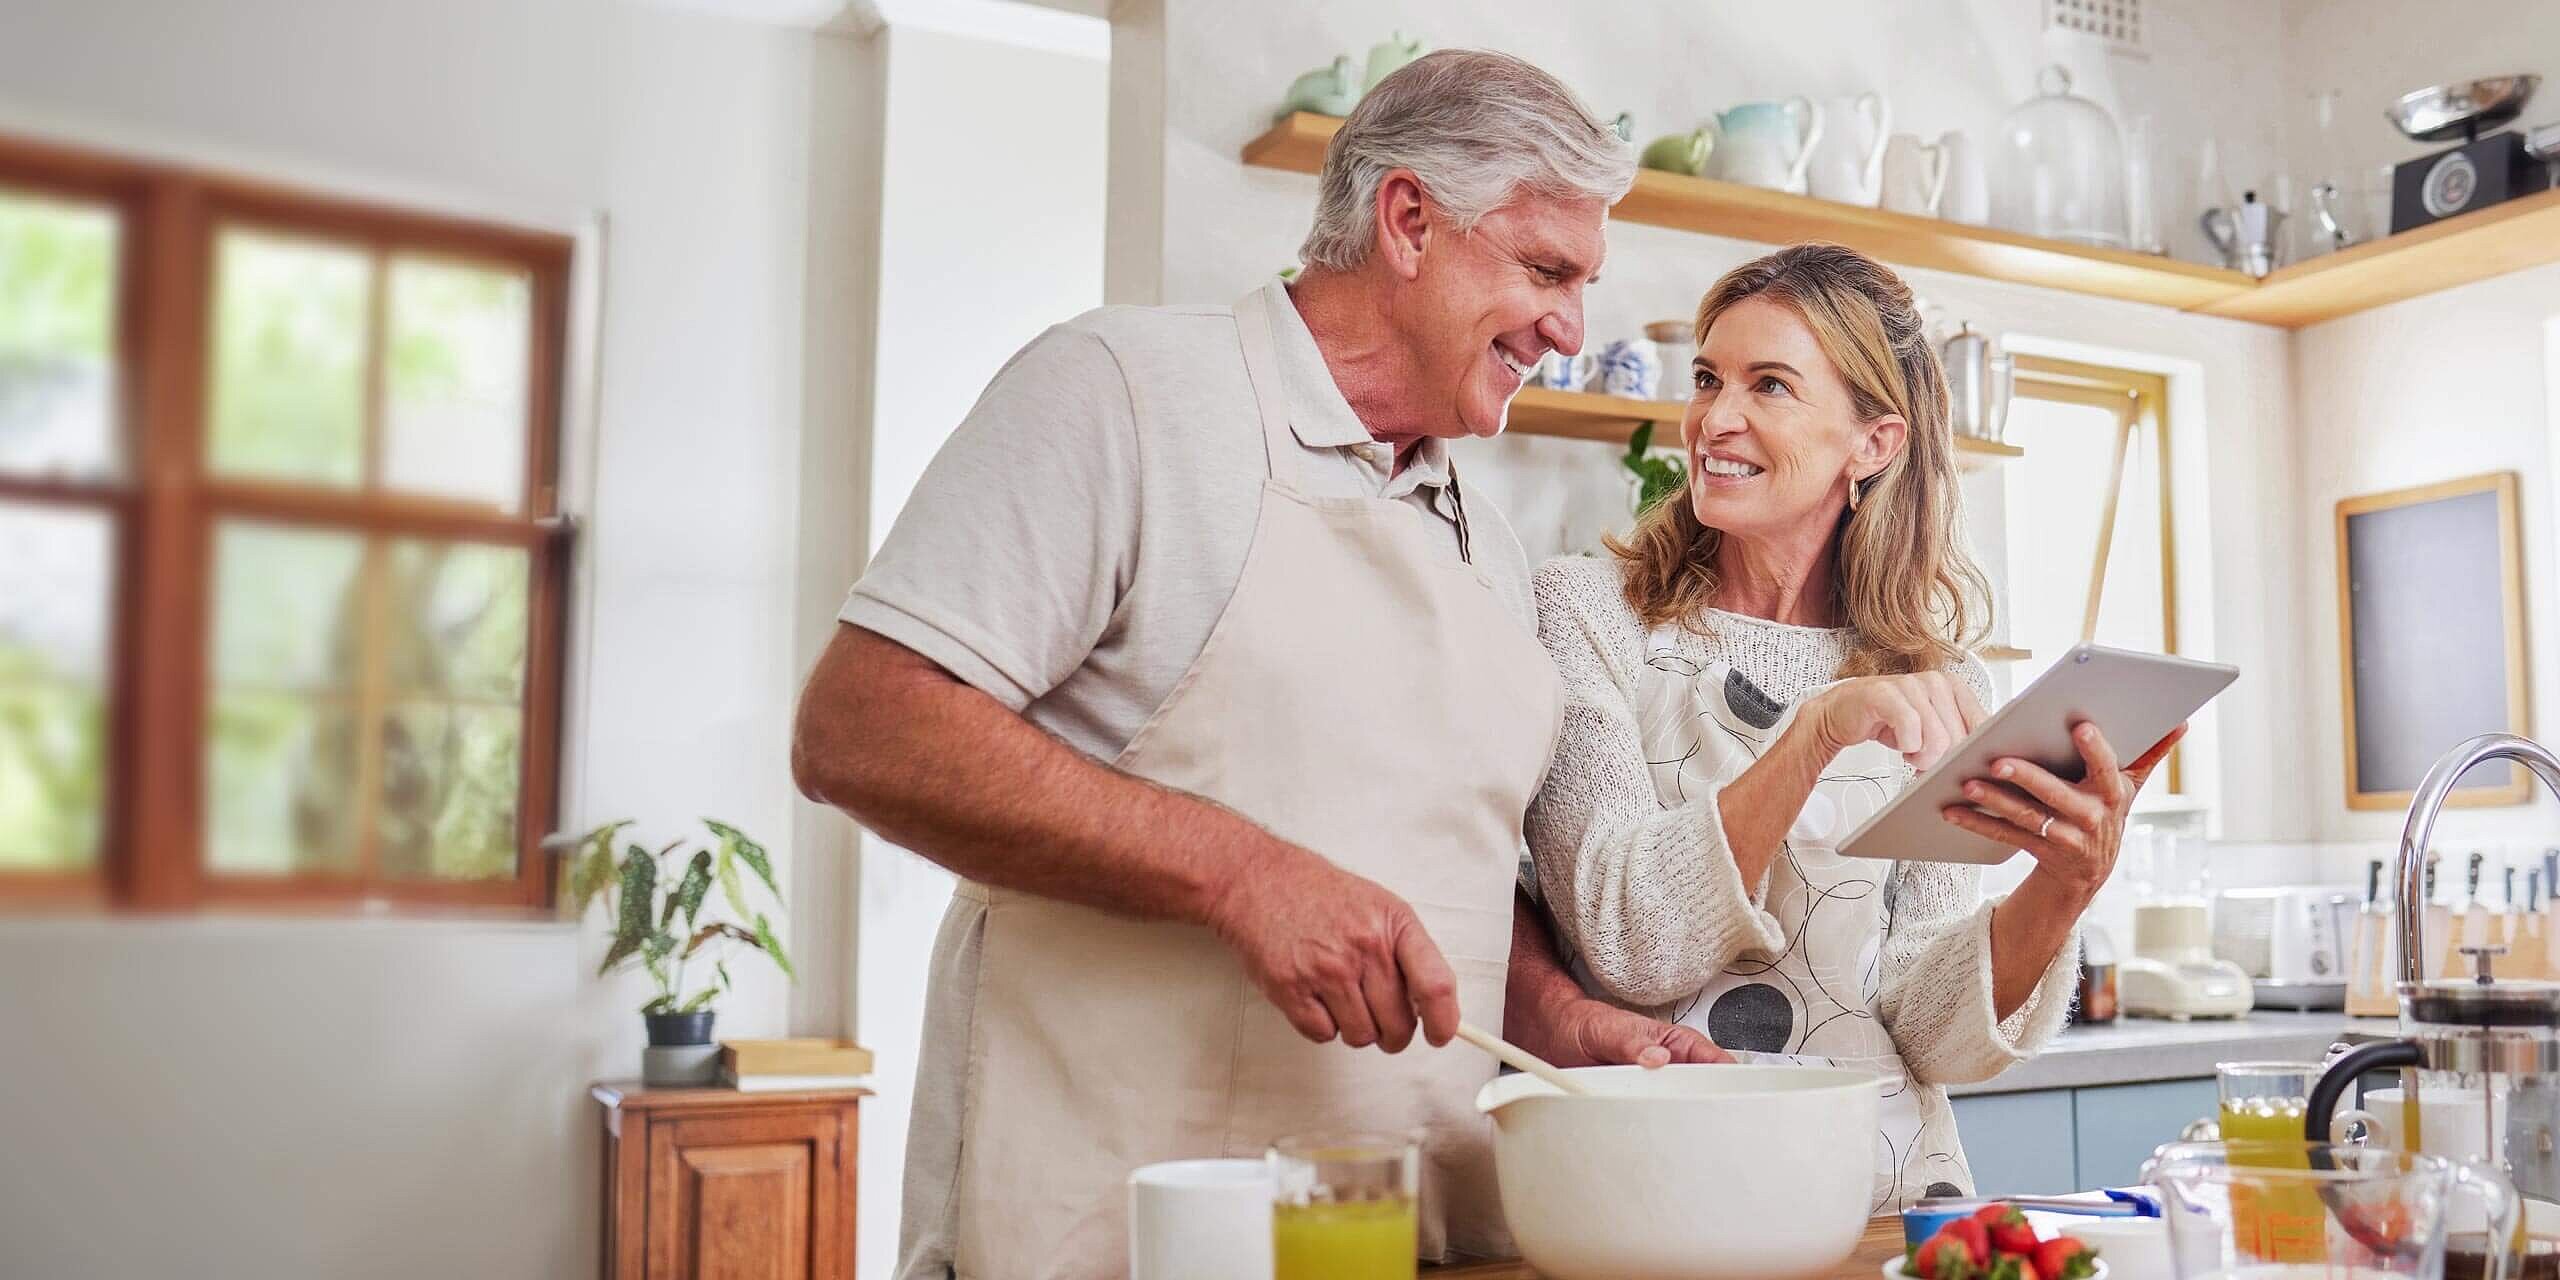 Ein lächelndes älteres Paar kocht gemeinsam in einer hellen Küche. Der Mann mischt Zutaten in einer Schüssel, während die Frau ein Tablet hält und darauf zeigt. Die Theke ist mit verschiedenen Küchenutensilien gefüllt, darunter Eier, Saft und Obst.